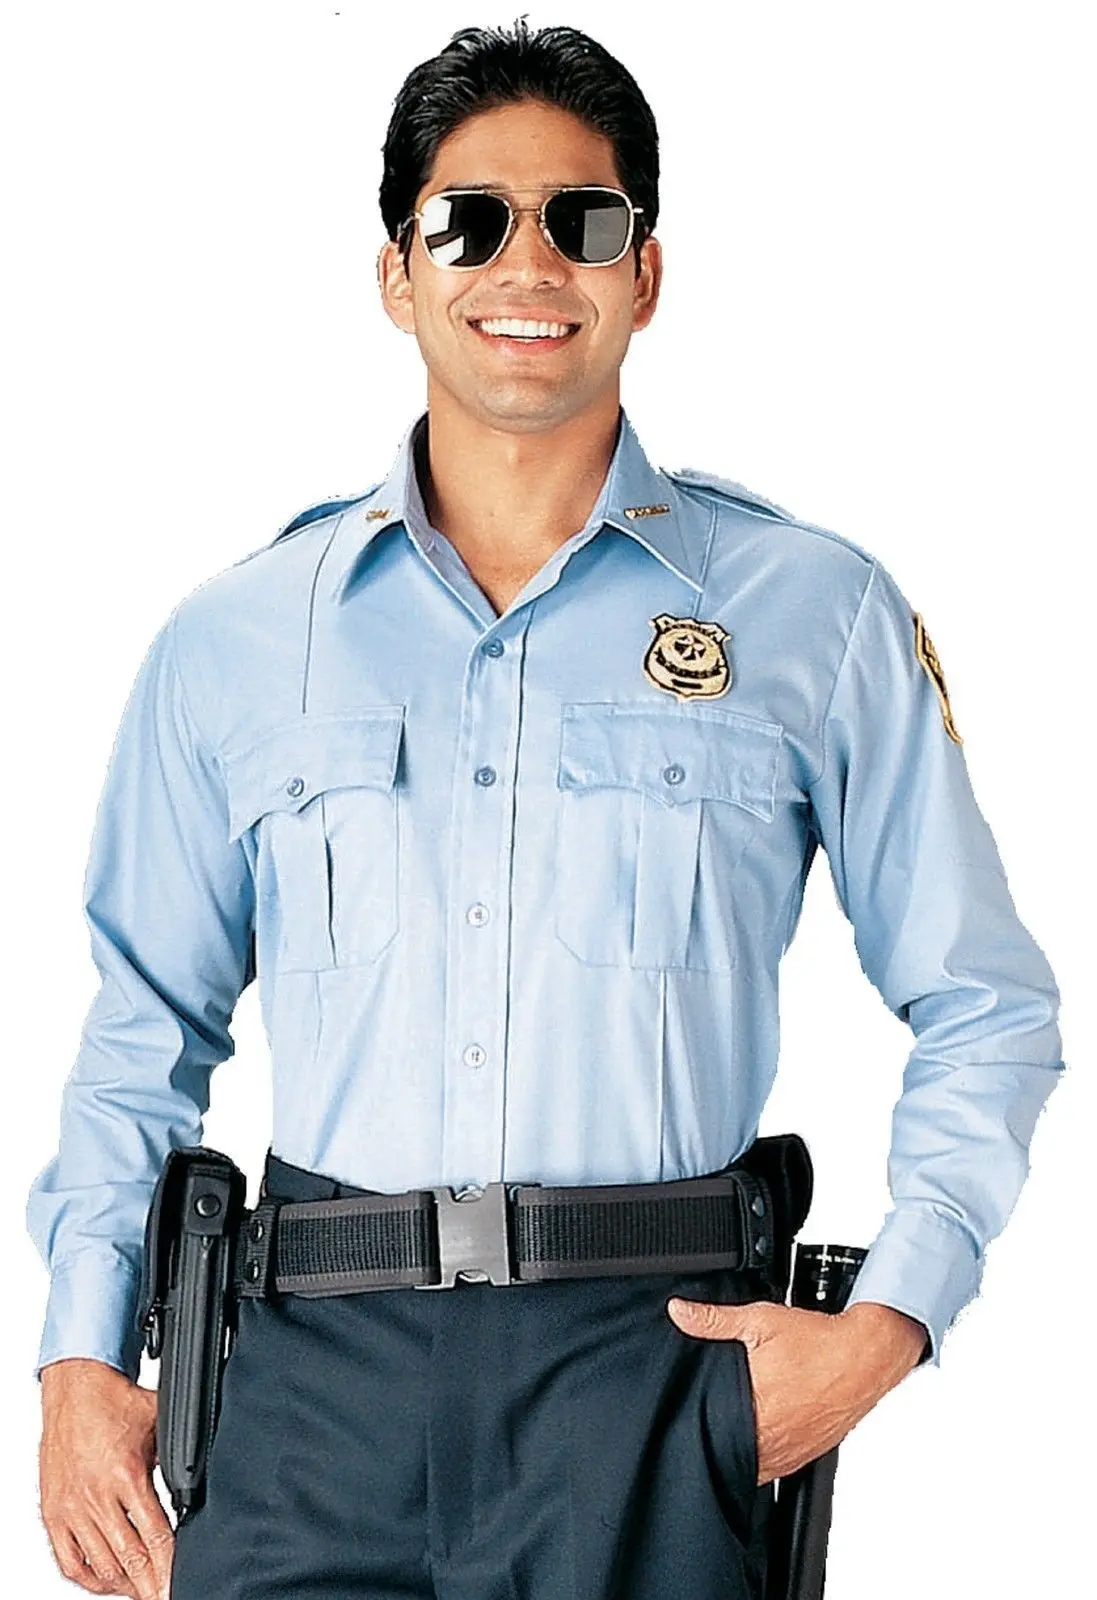 Новая рубашка полиции